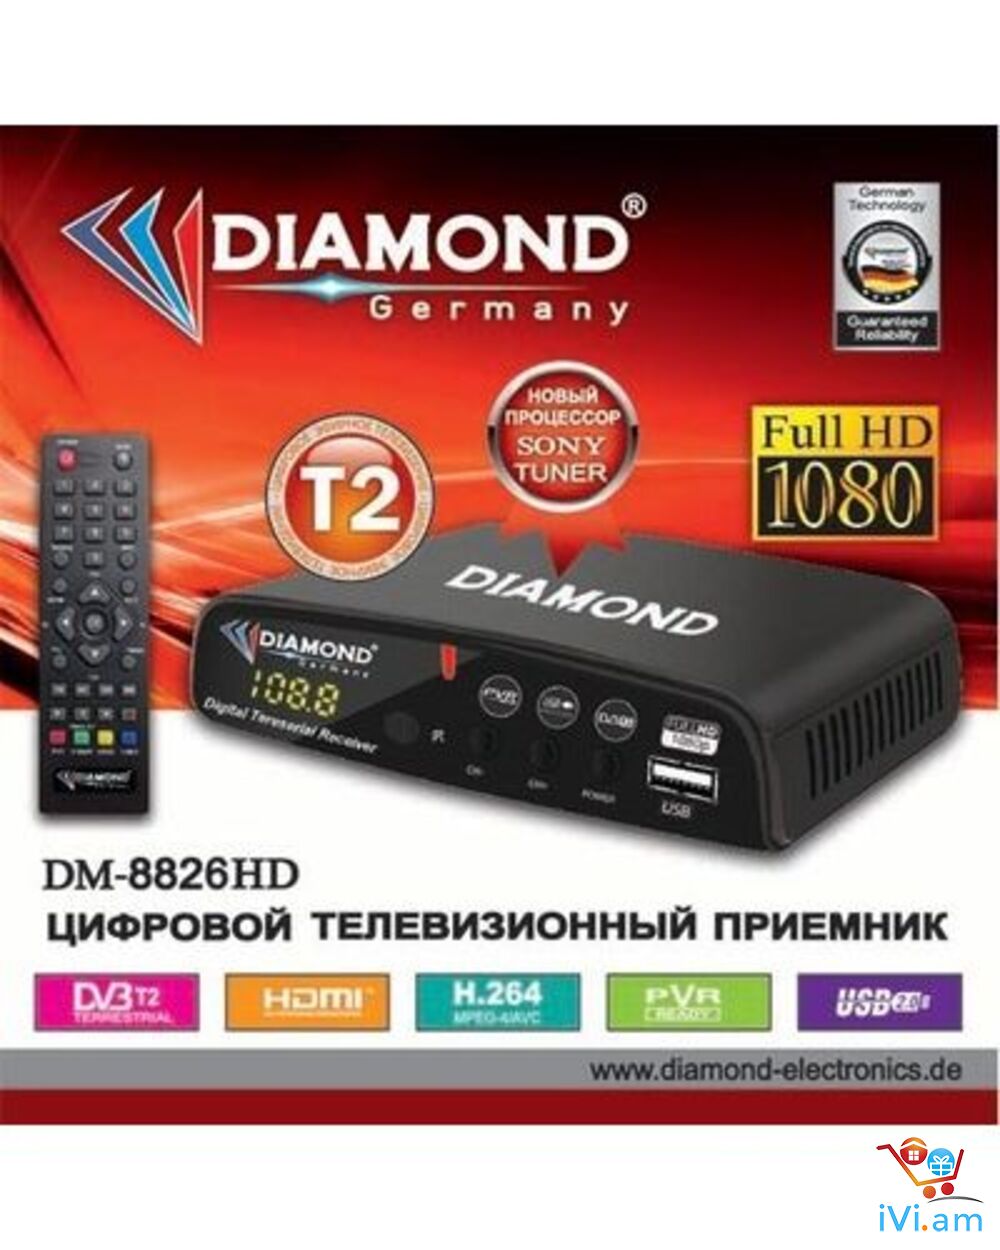 DVBT2 tvayin sarq, tv tuner DIAMOND DM 8826HD + անվճար առաքում և տեղադրում - Լուսանկար 1